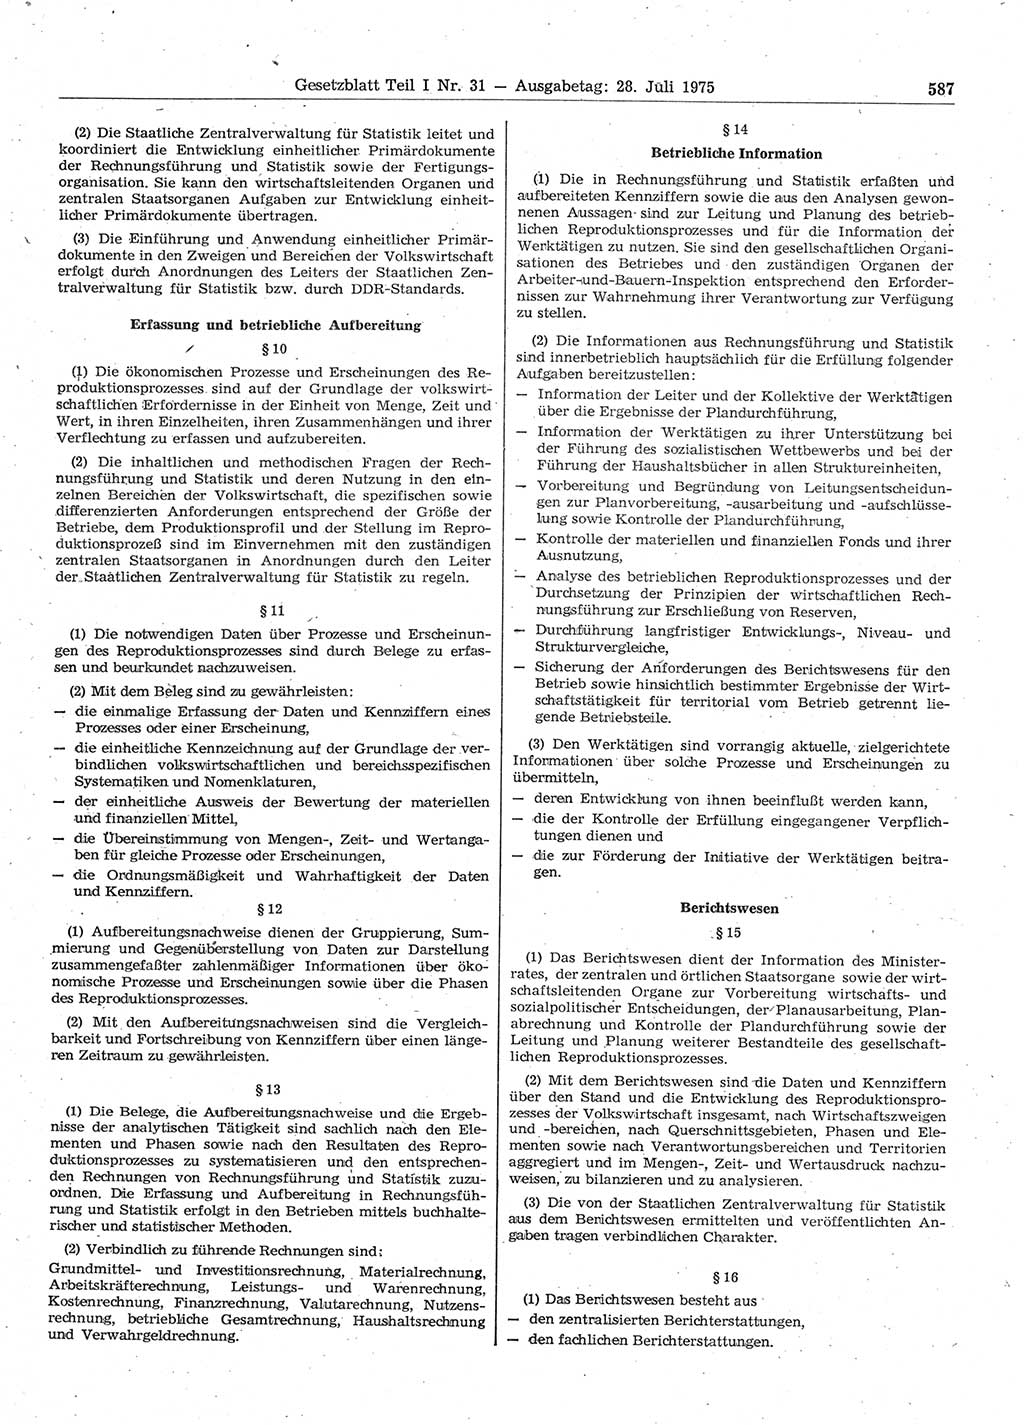 Gesetzblatt (GBl.) der Deutschen Demokratischen Republik (DDR) Teil Ⅰ 1975, Seite 587 (GBl. DDR Ⅰ 1975, S. 587)